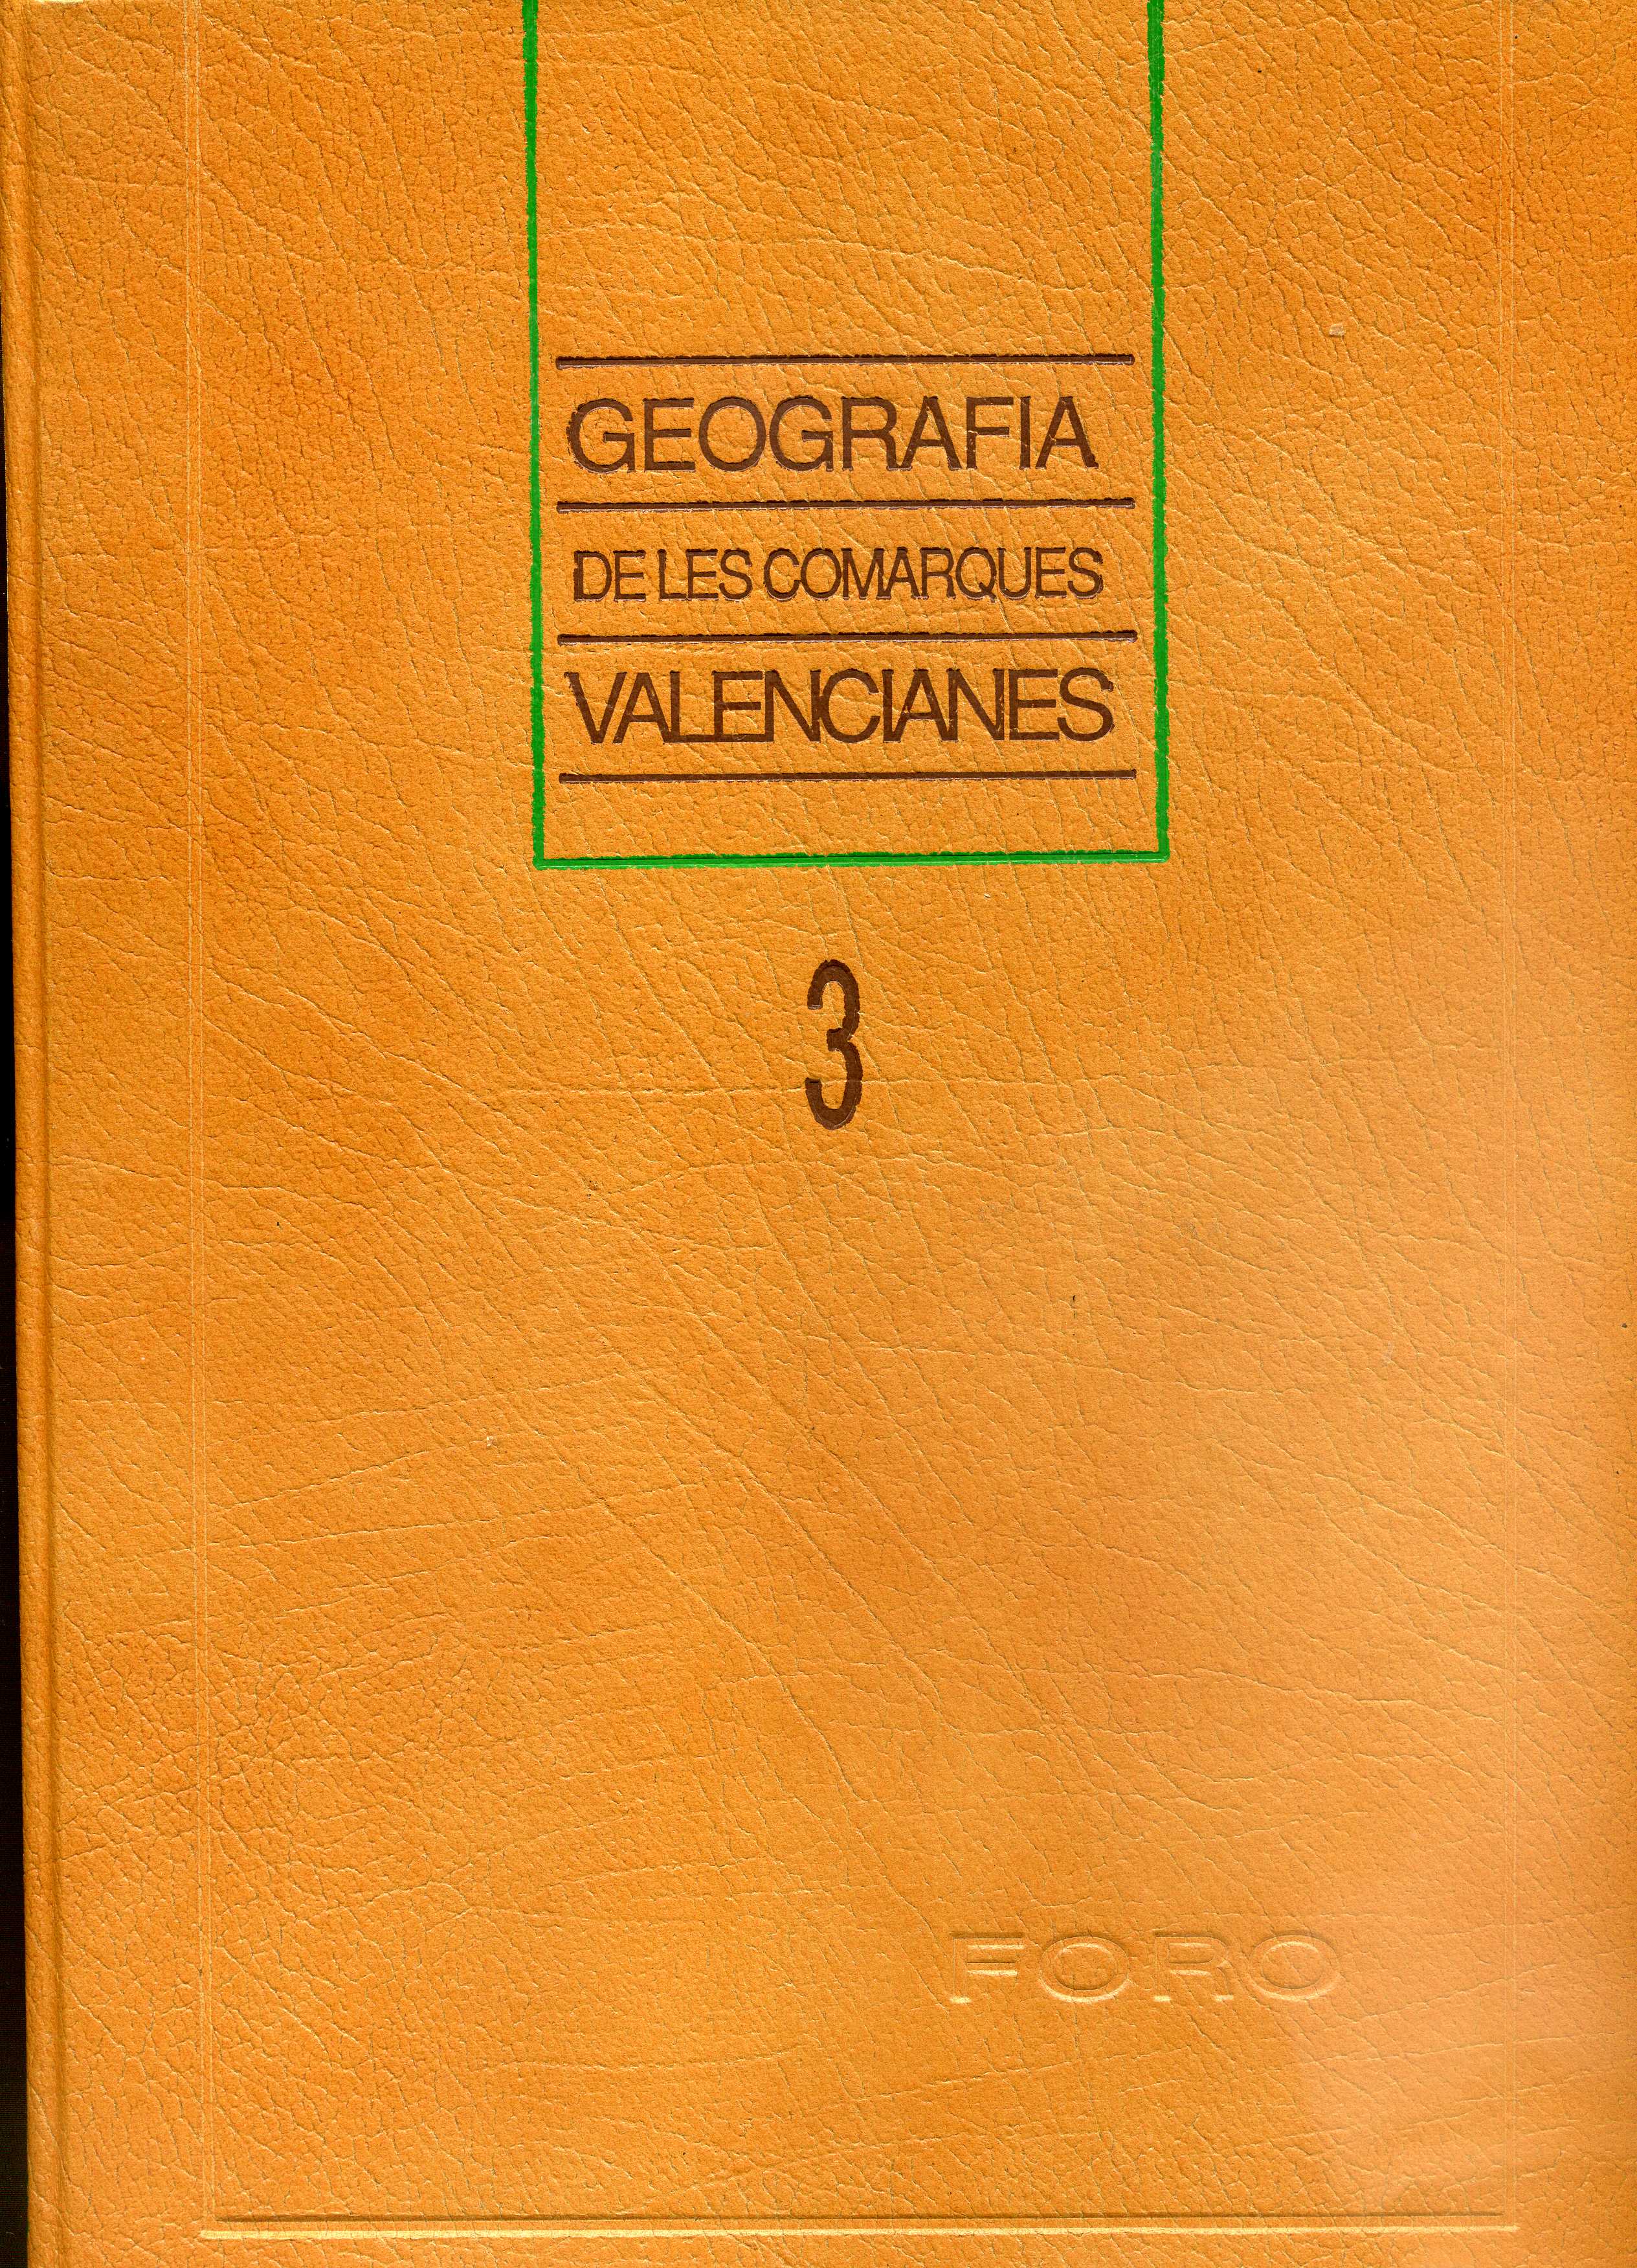 Geografia de les comarques valencianes (Volum 3)